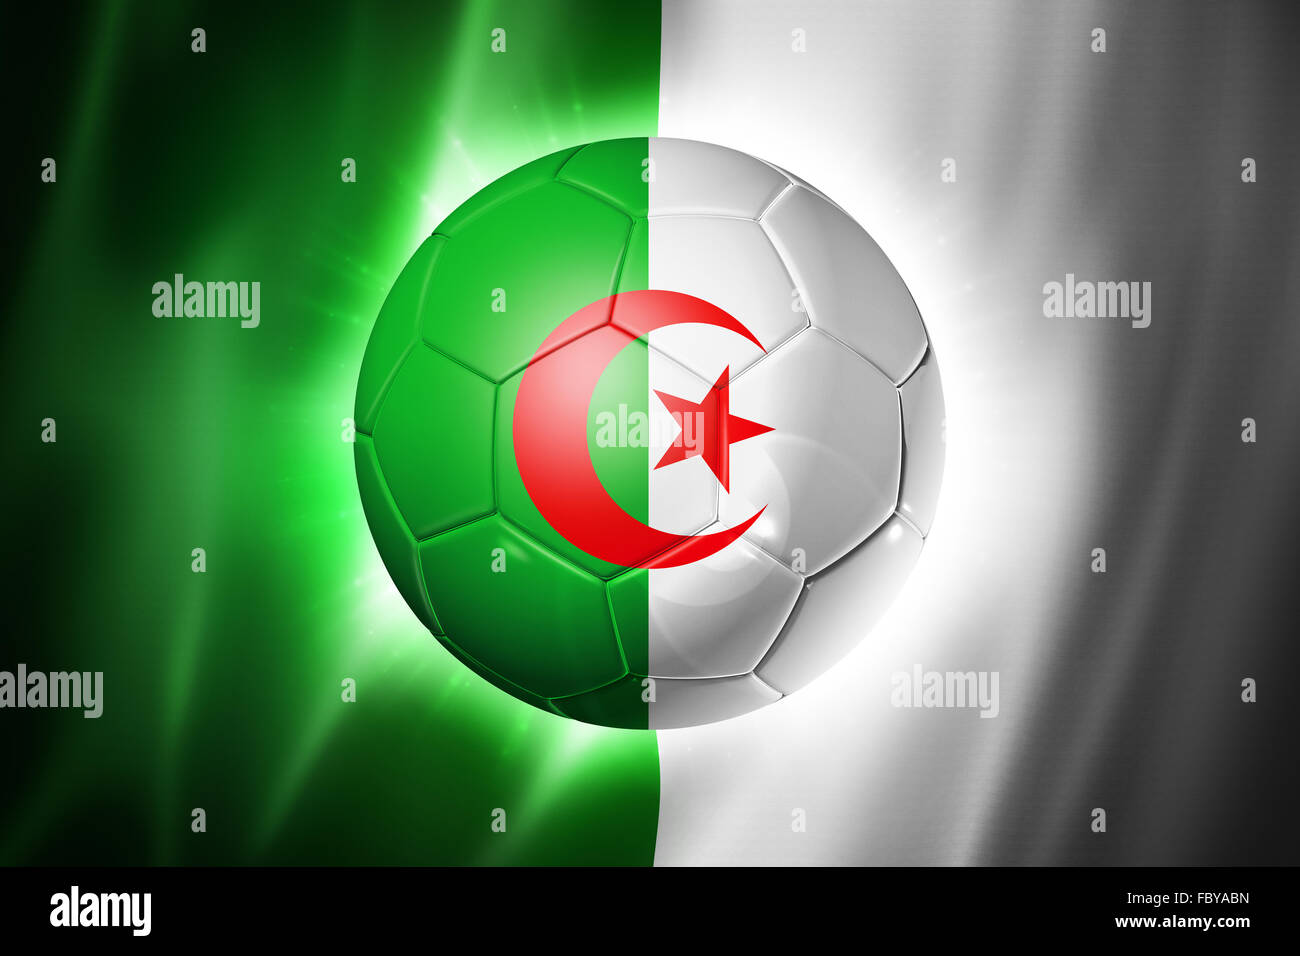 Soccer football ball with Algeria flag Stock Photo